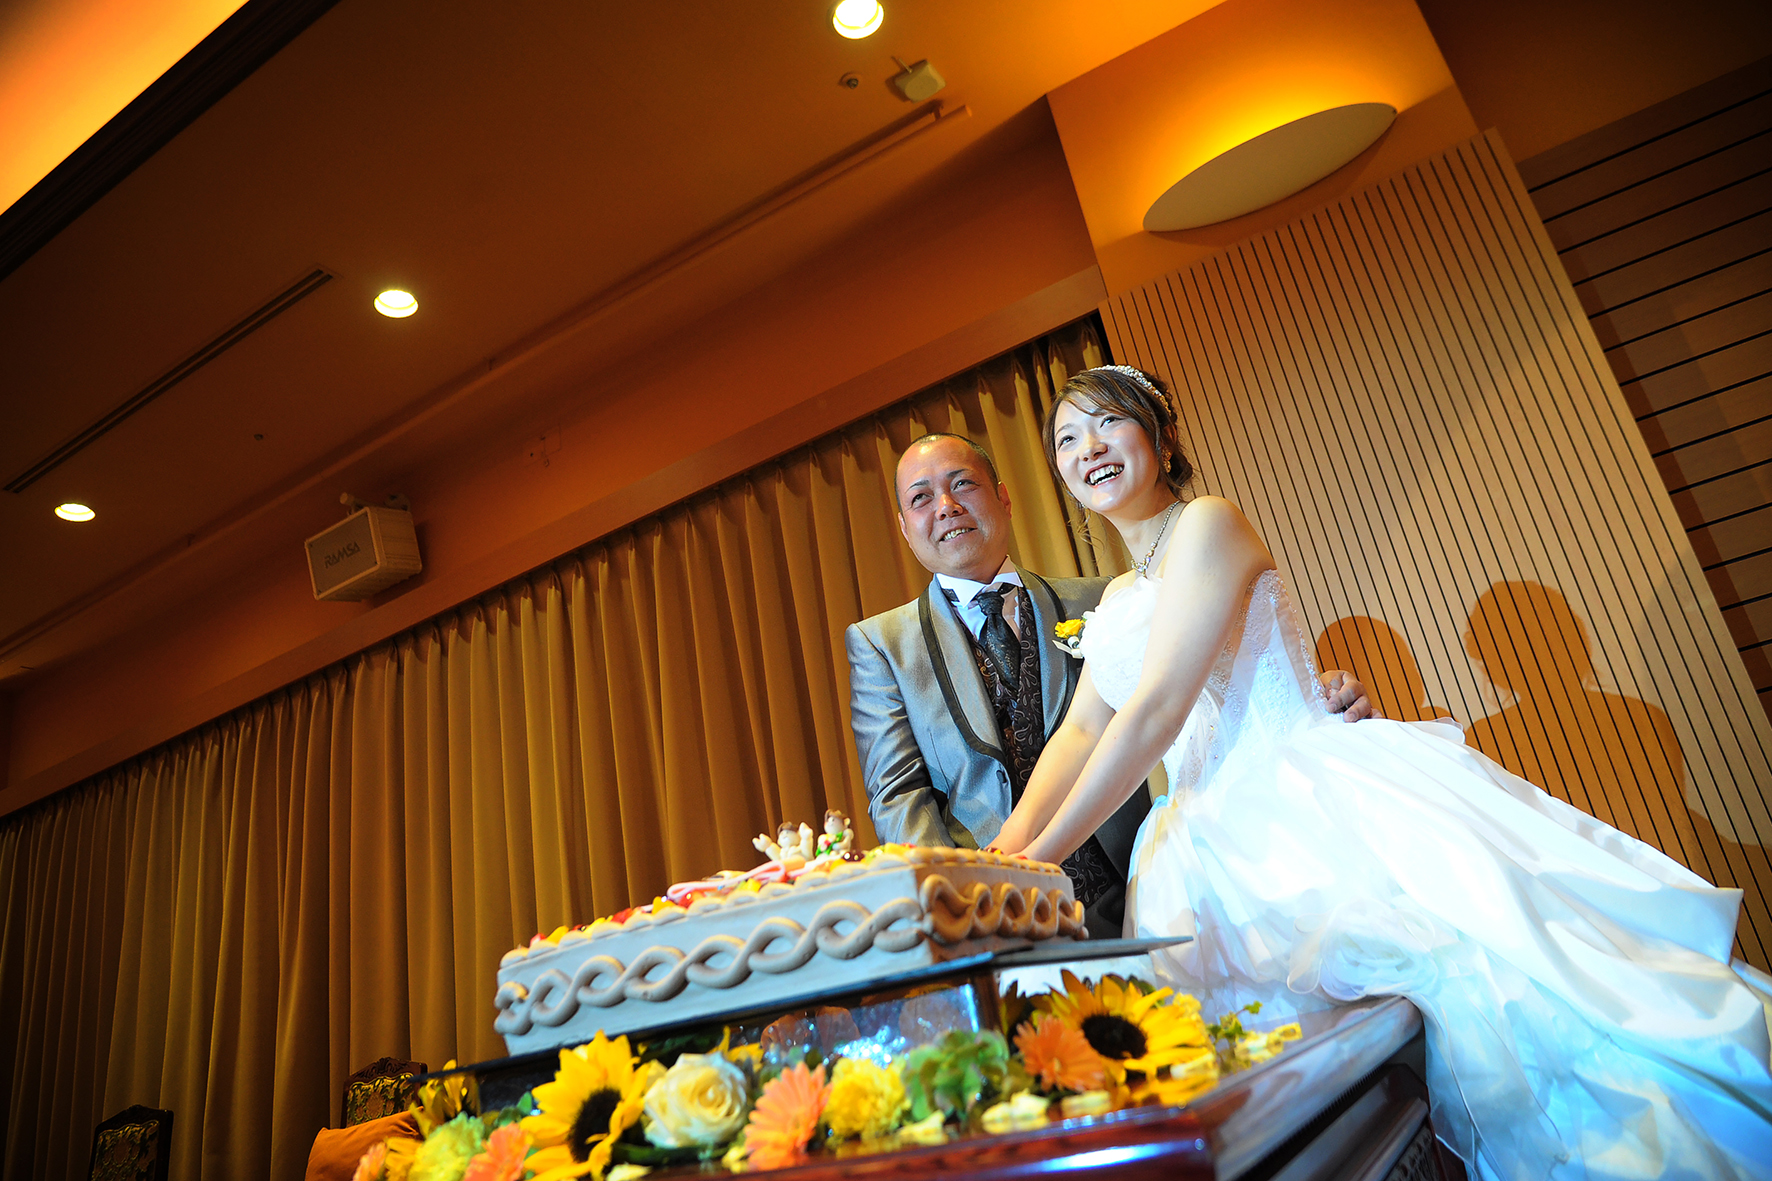 ビールサーブでテーブルラウンドお酒好きな二人らしいアットホーム婚 熊本の結婚式 菊南温泉ユウベルホテル